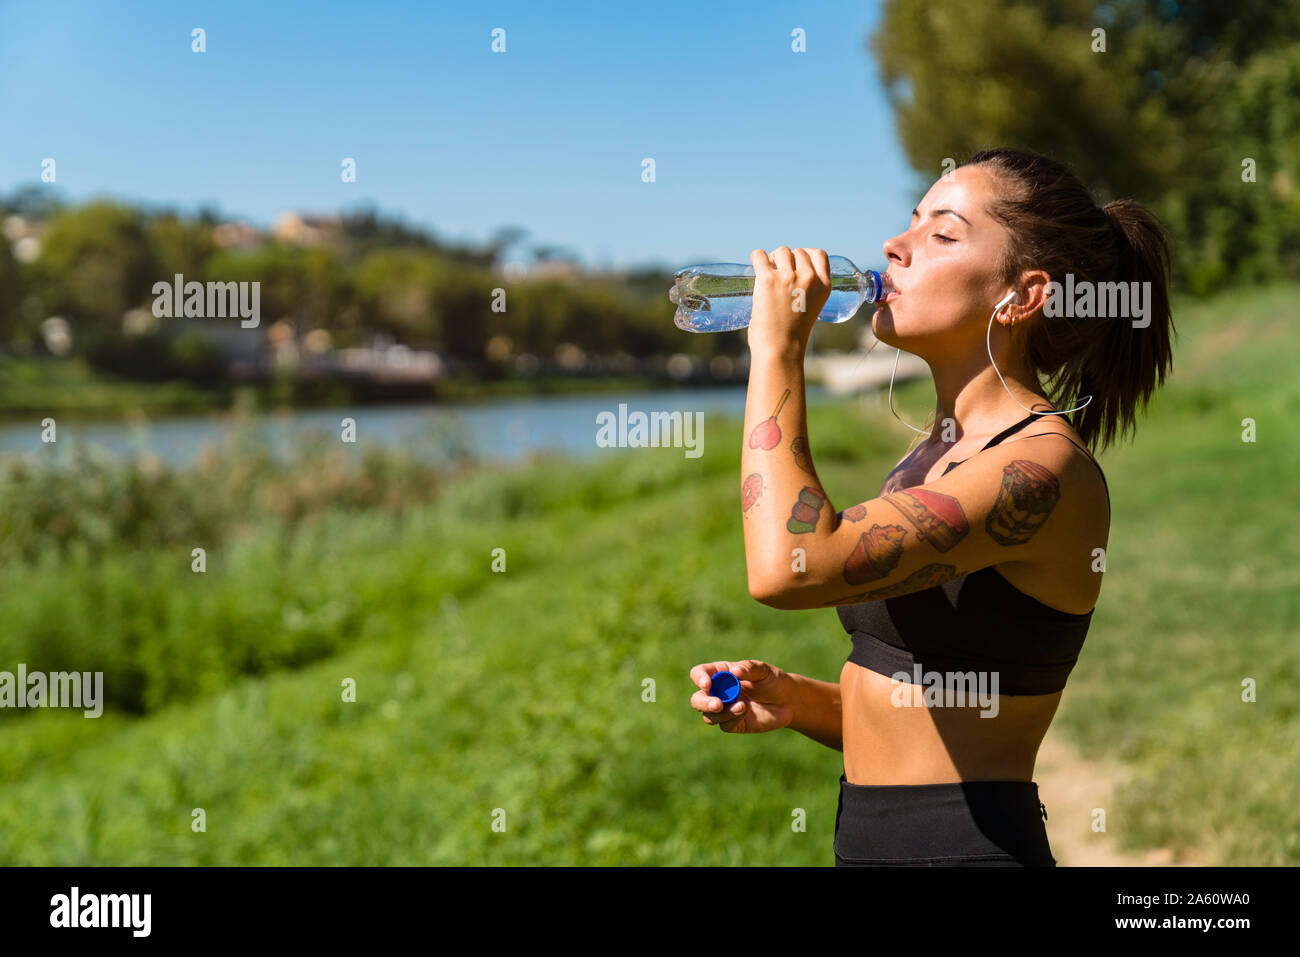 Sportliche junge Frau mit einem kühlen Pause am Flußufer Stockfoto